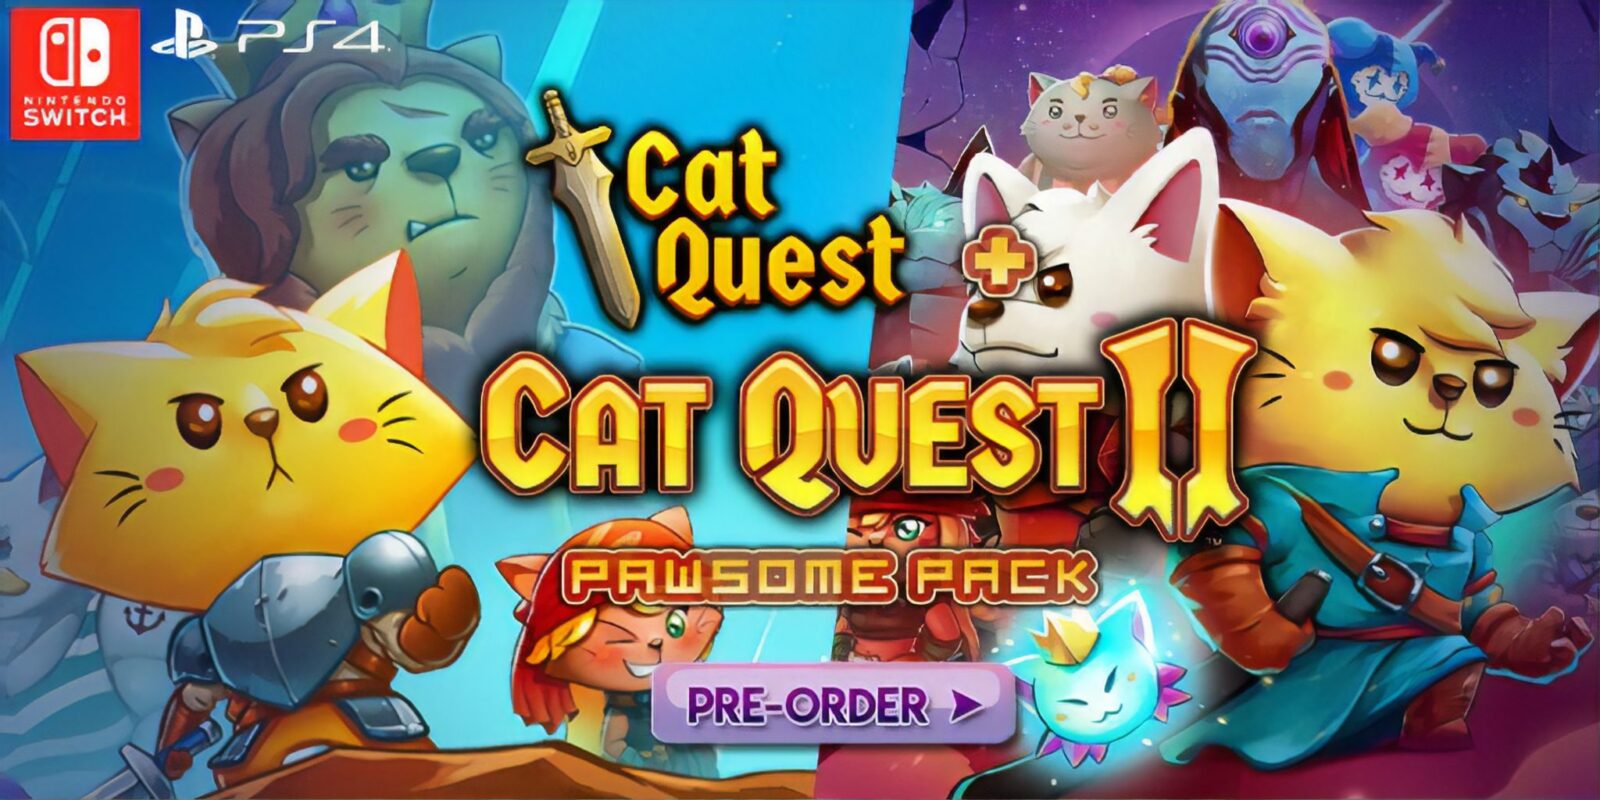 Cat Quest + Cat Quest II Pawsome Pack akan meluncur di akhir bulan Juli